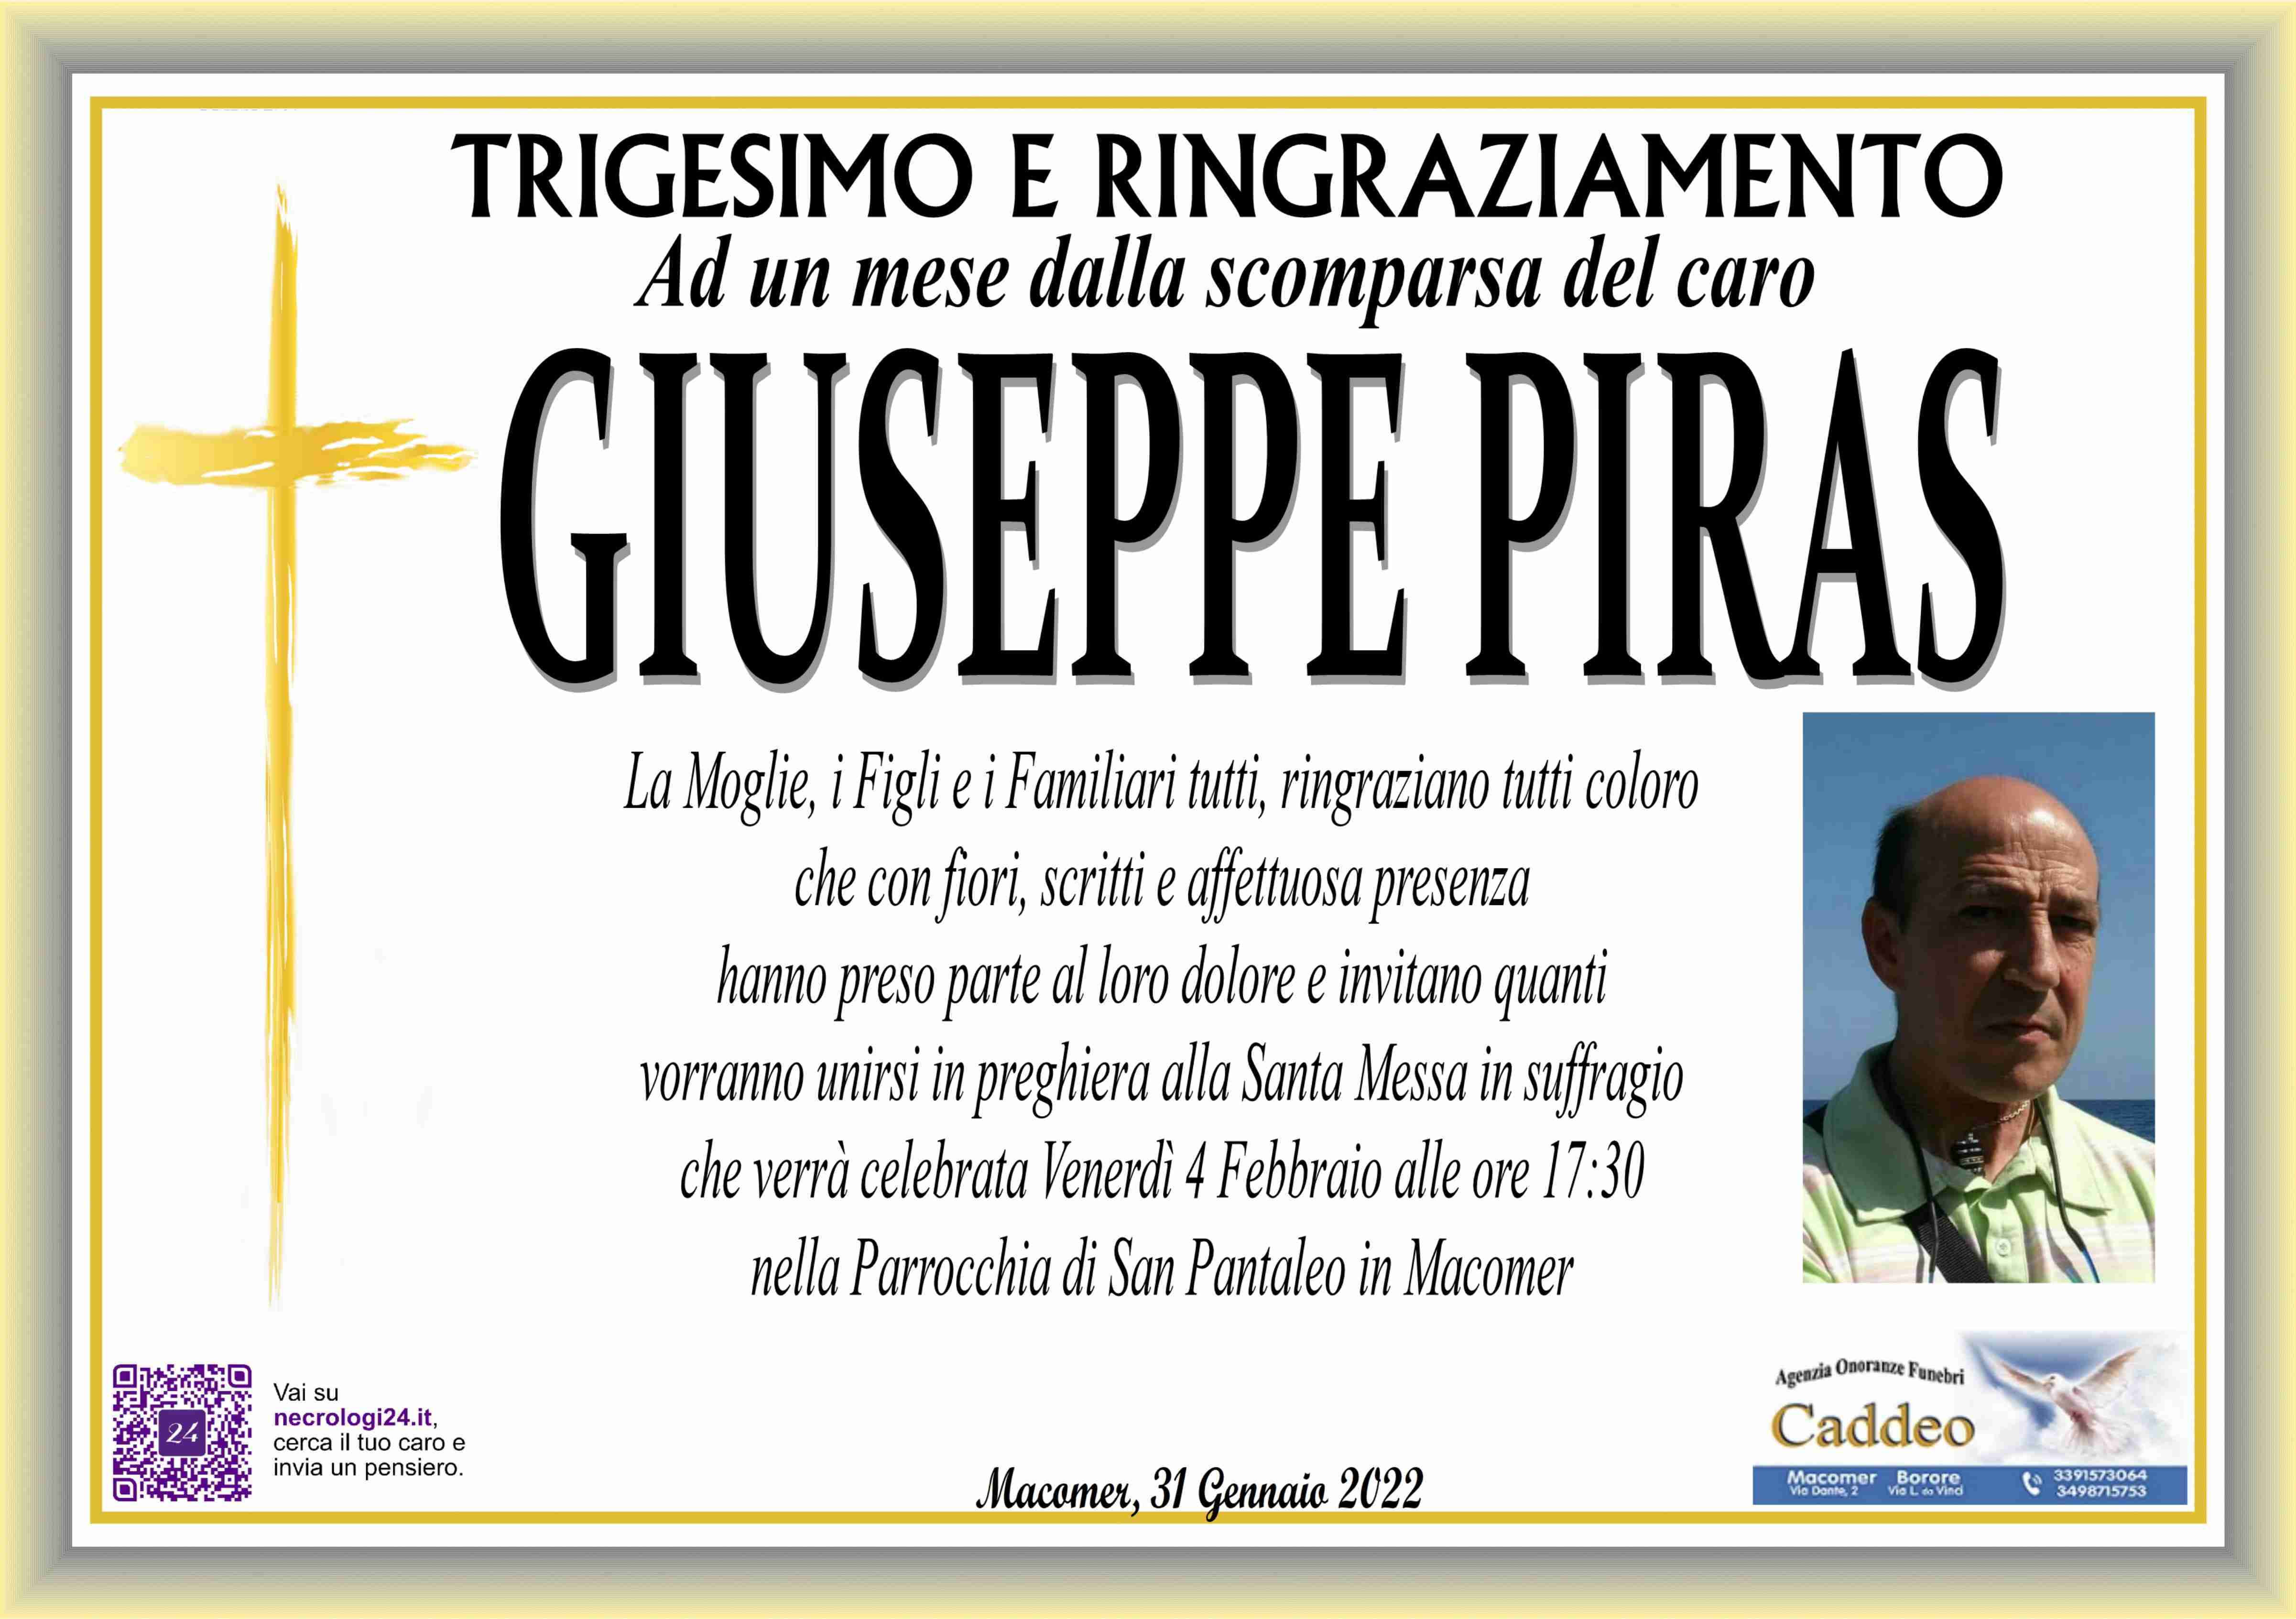 Giuseppe Antonio Piras